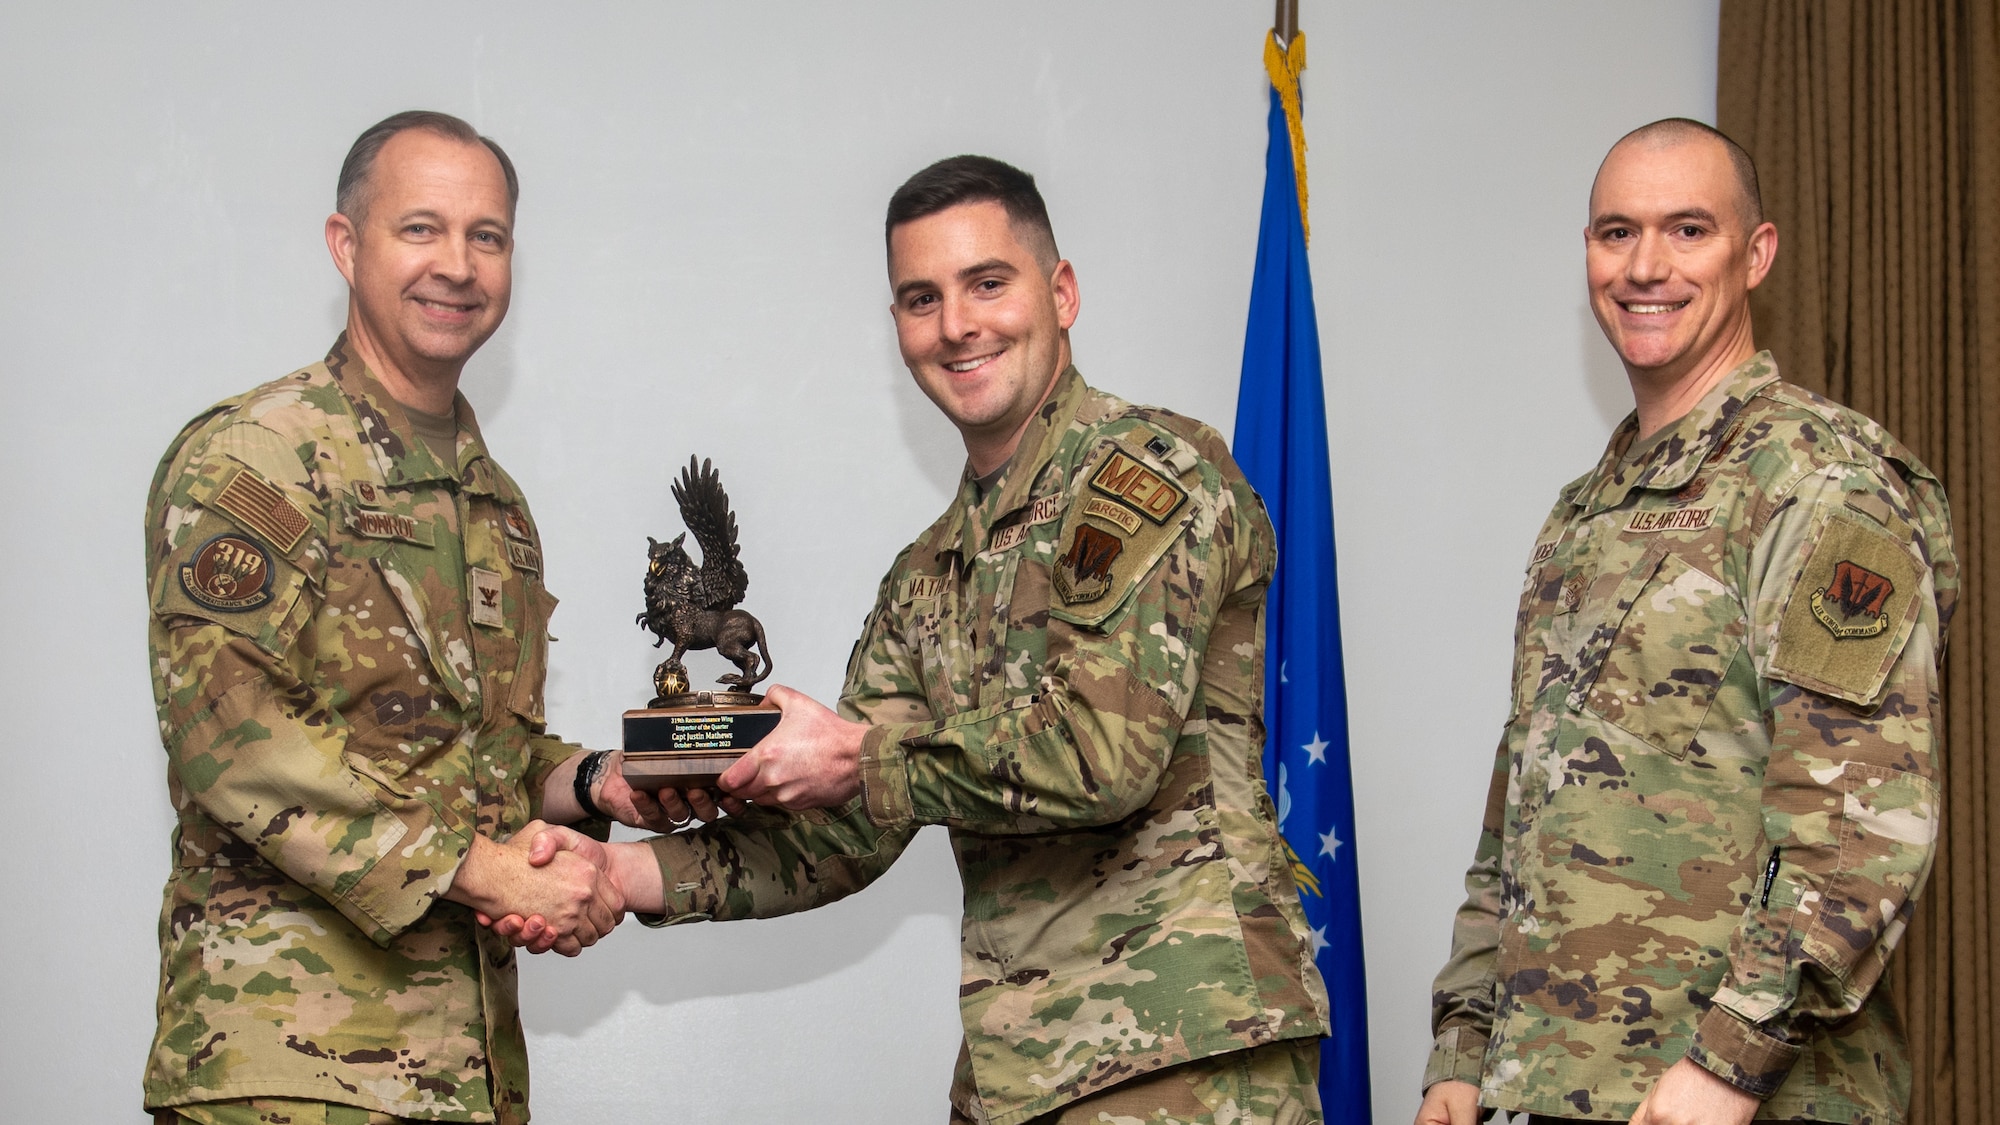 A man in a military uniform receives an award.